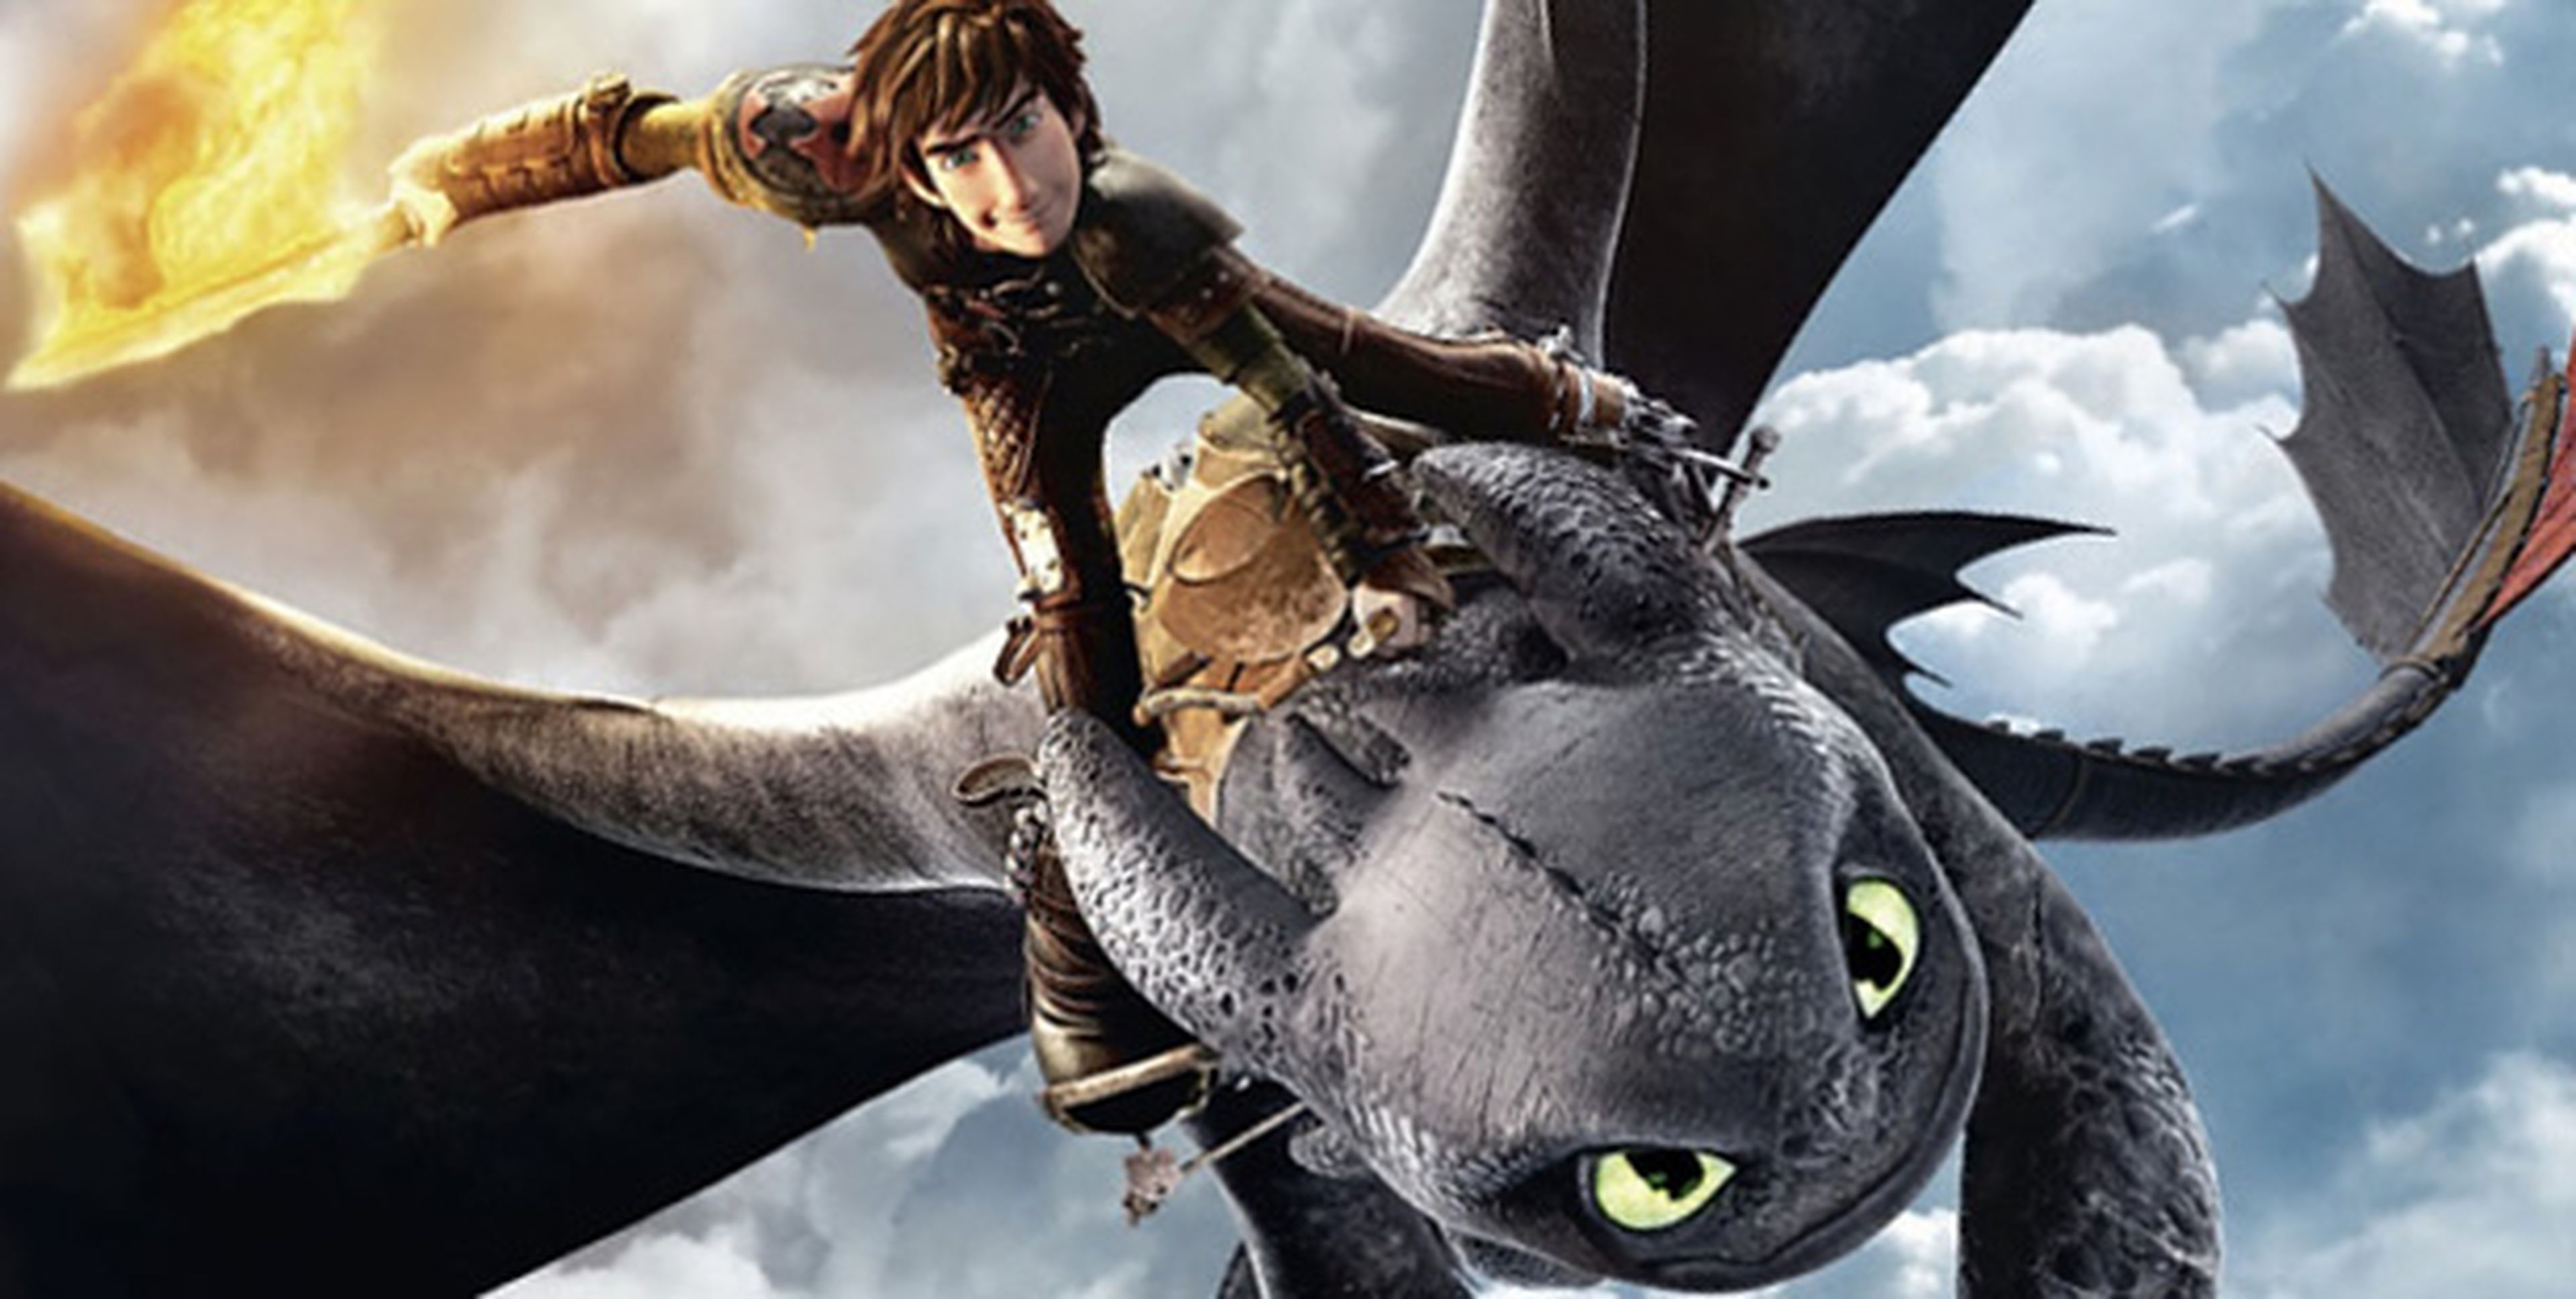 Cómo entrenar a tu dragón 2 es la película de animación más taquillera de 2014